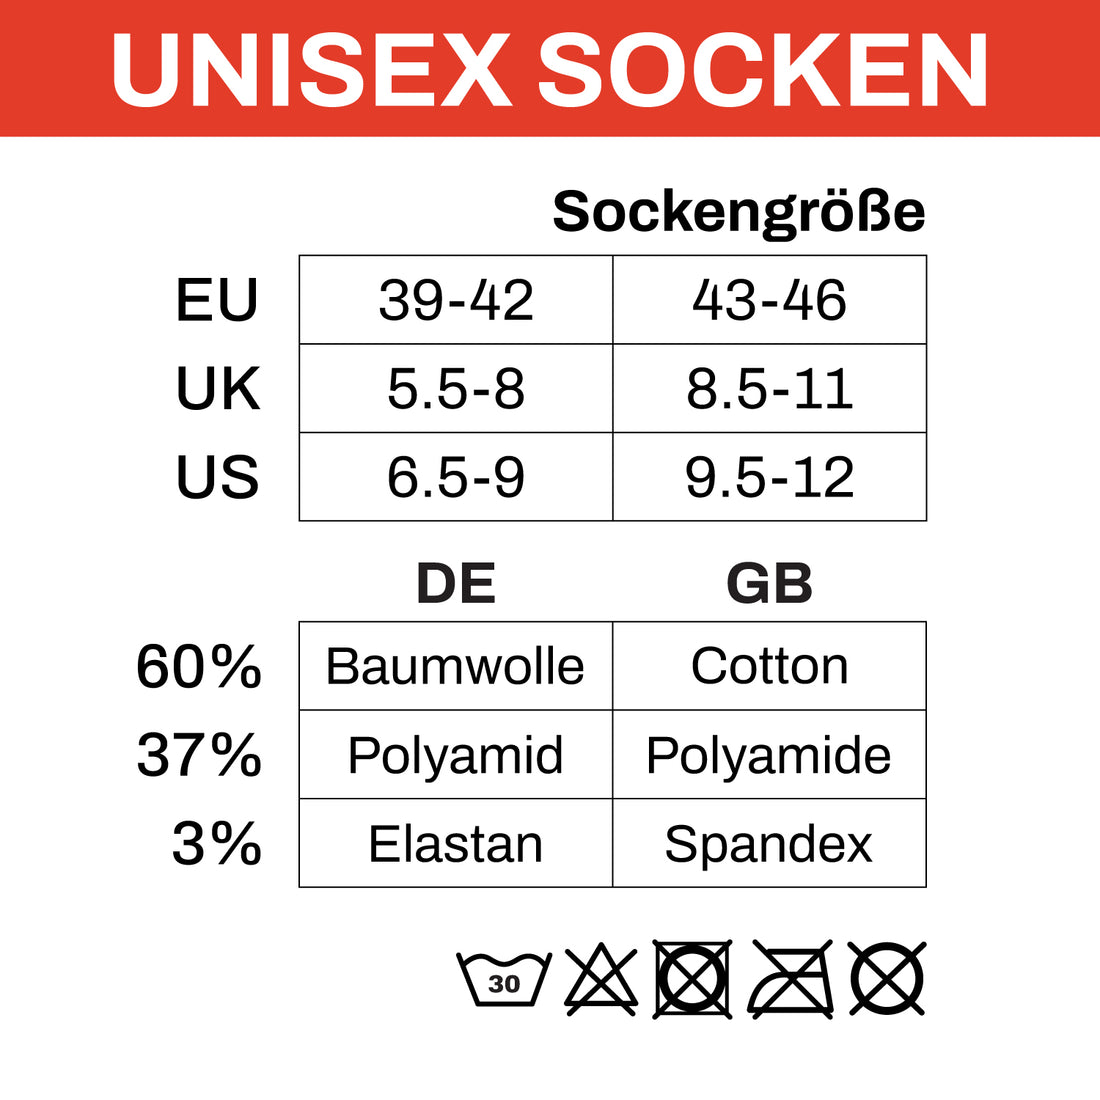 ChiliLifestyle Socken Thermo Outdoor Color, 6 Paar, Herren, Damen, Winter